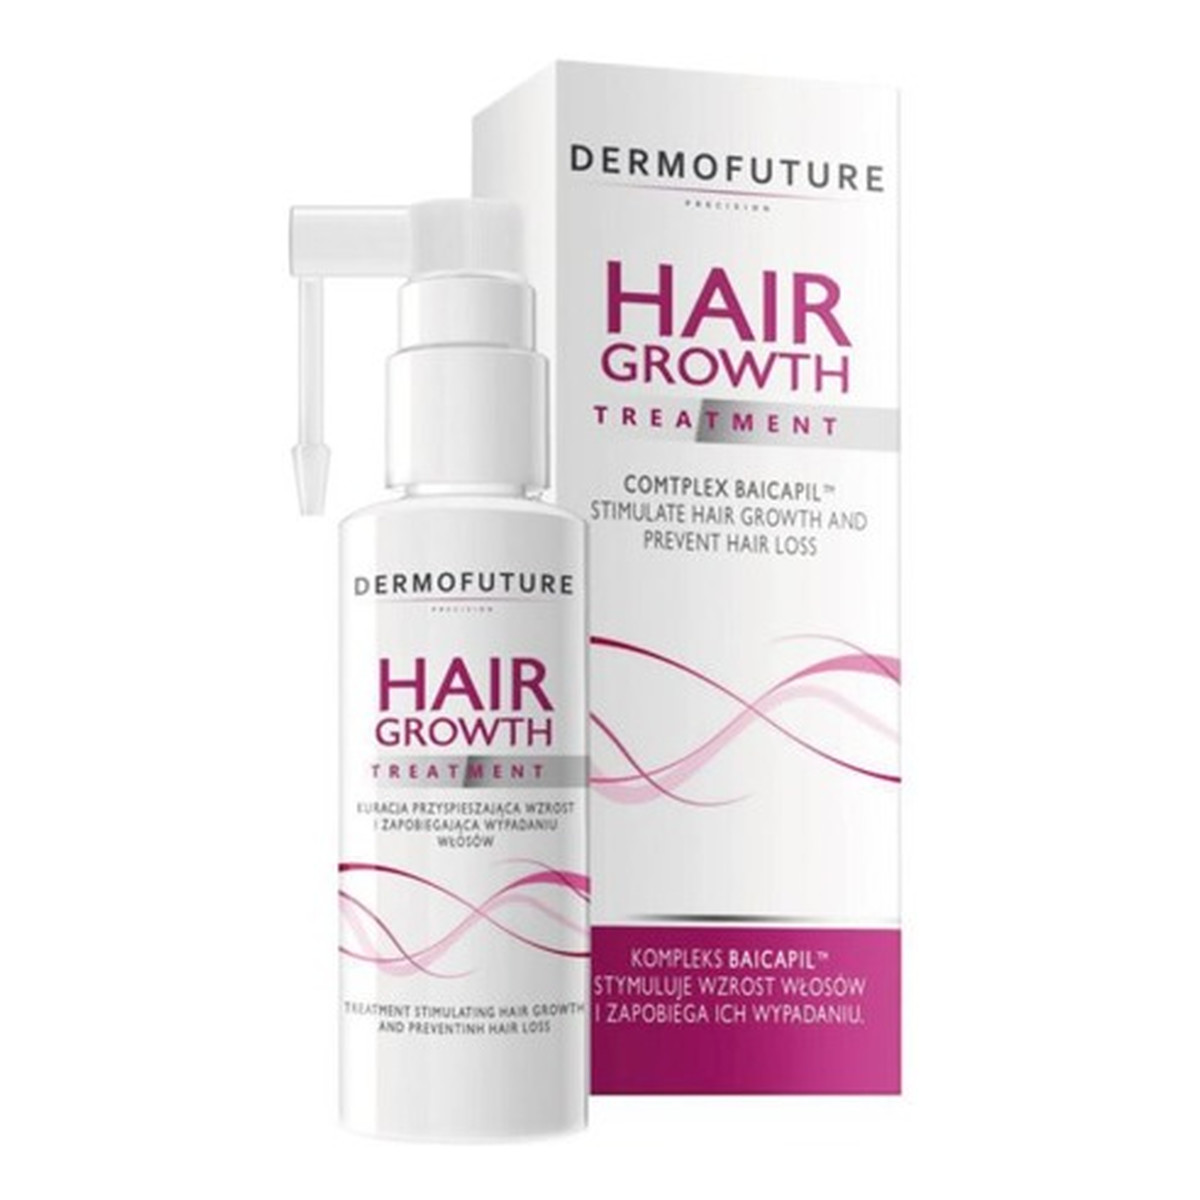 DermoFuture Woman DF5 Kuracja Przyśpieszająca Wzrost i Zapobiegająca Wypadaniu włosów 30ml